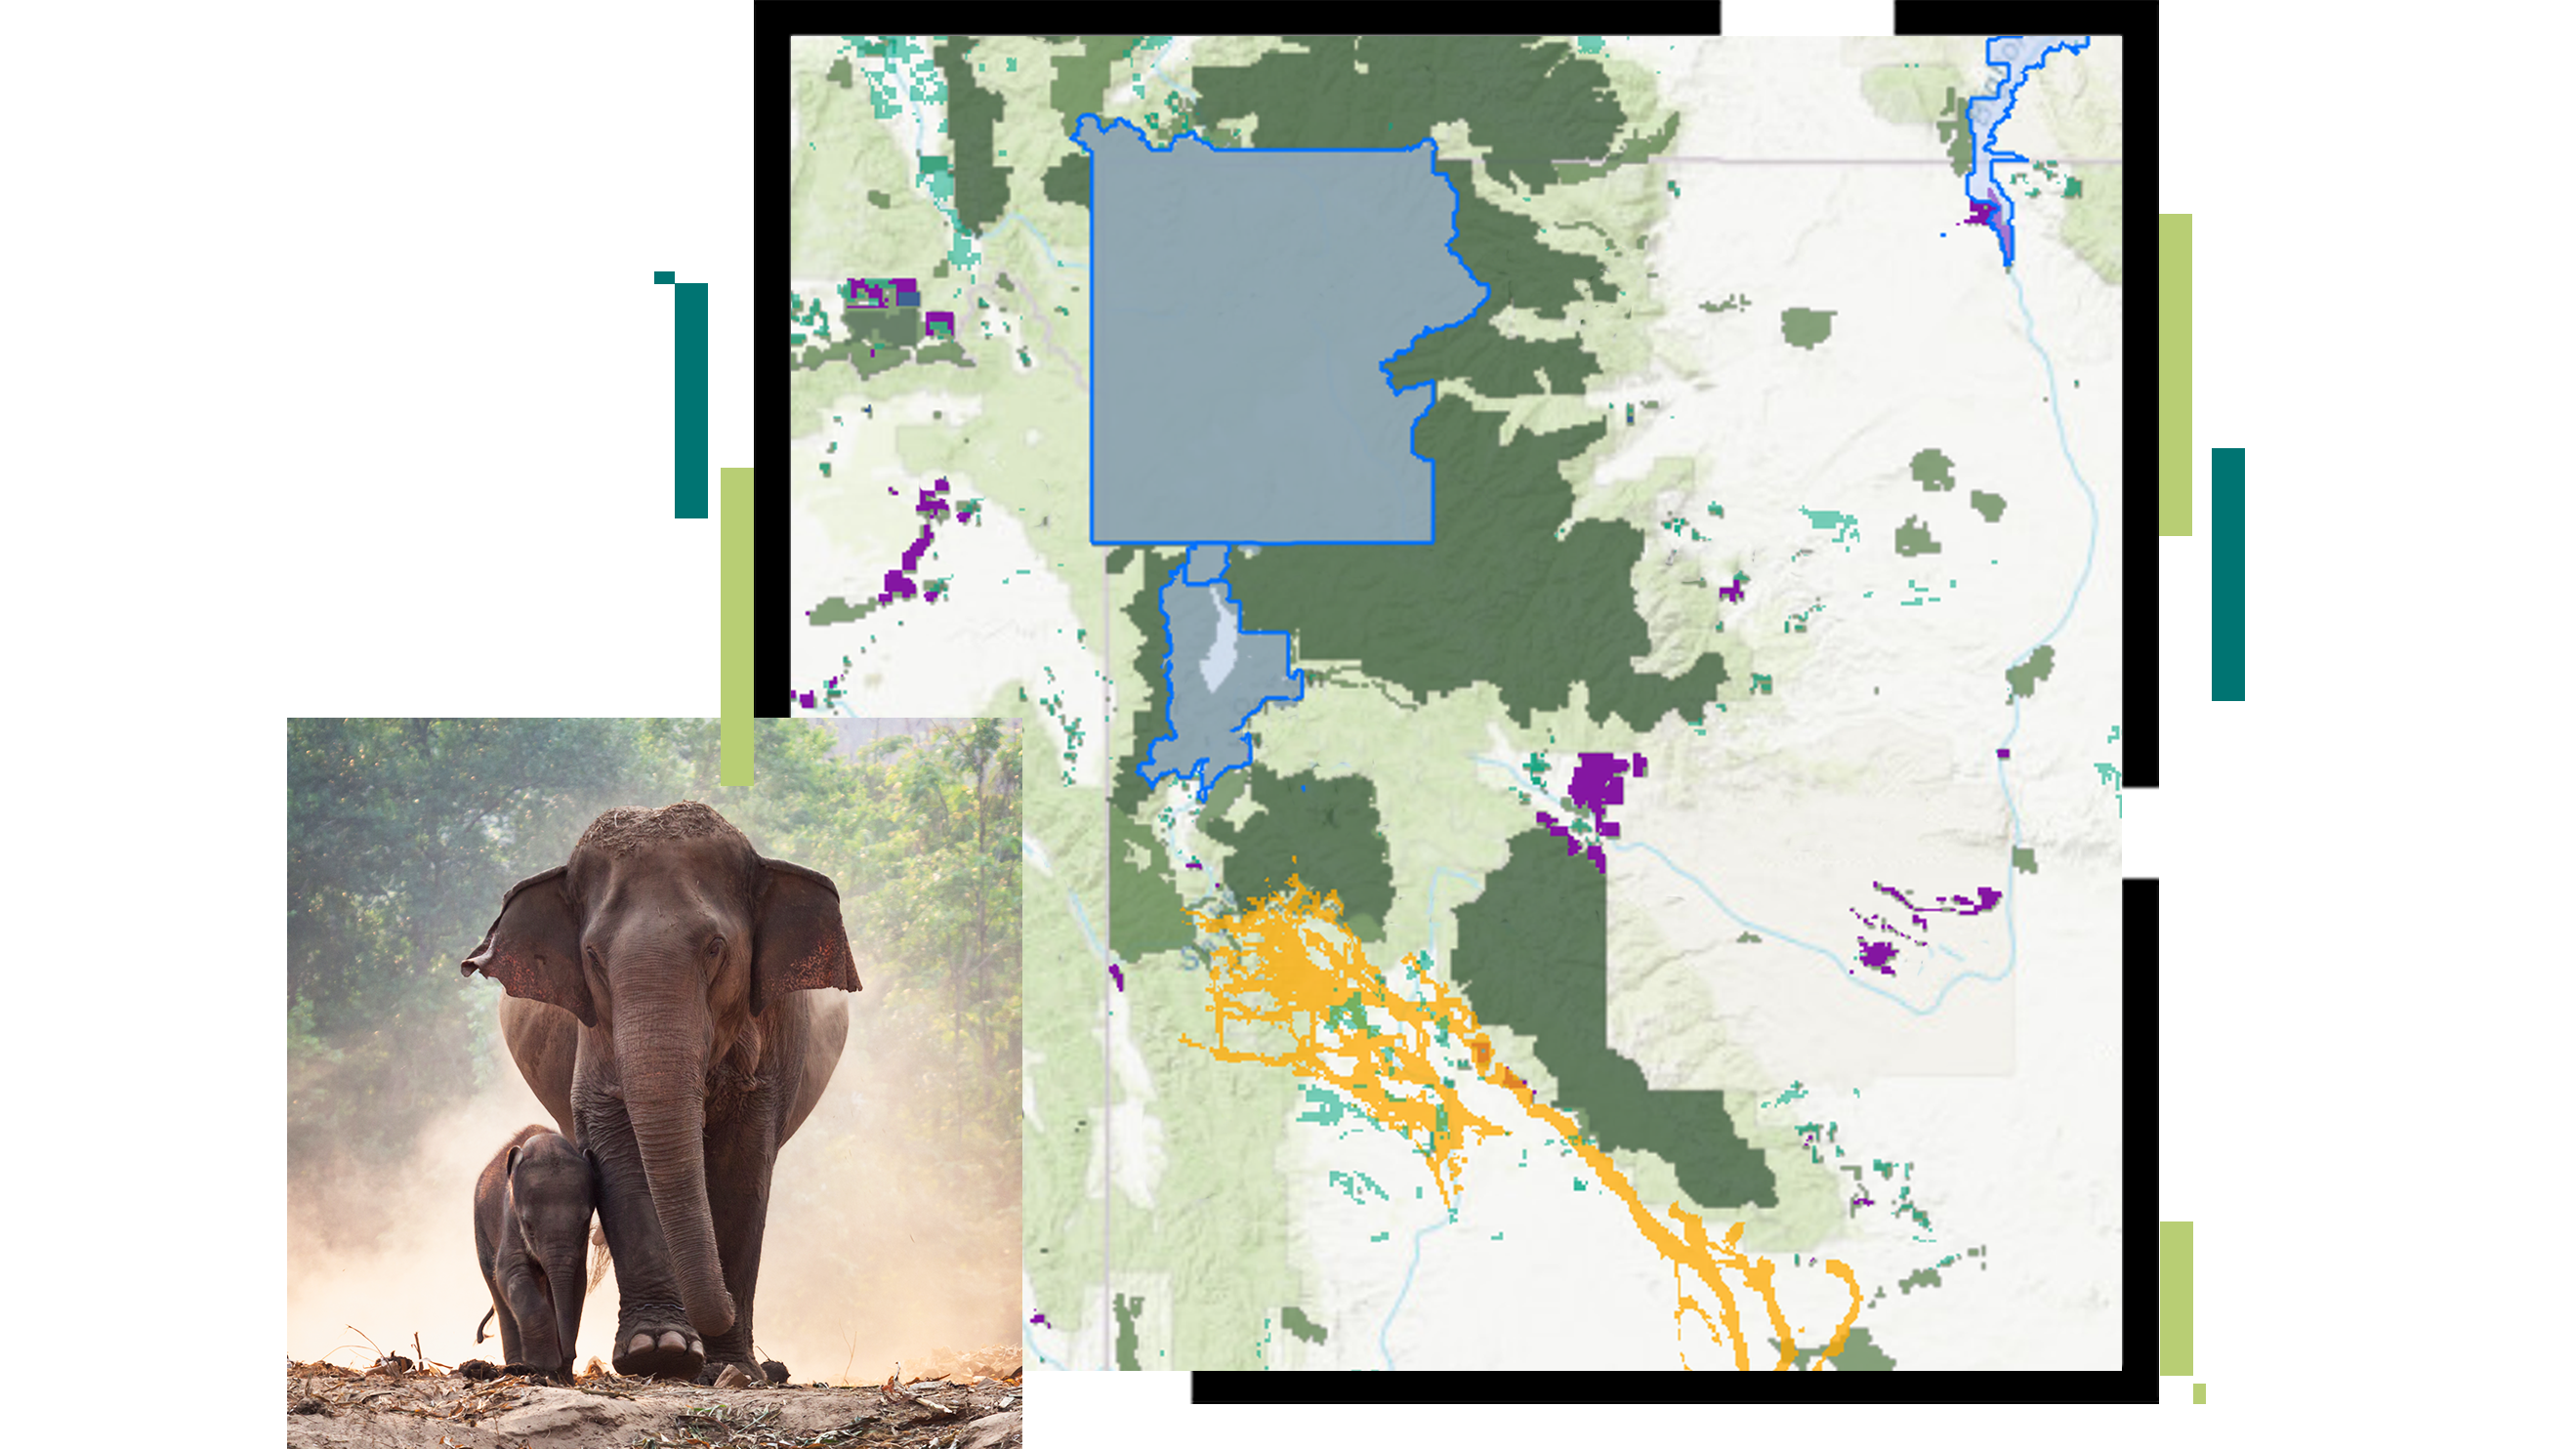 Un mapa con un área de conservación propuesta delineada en azul superpuesta con una imagen de un elefante y su cría